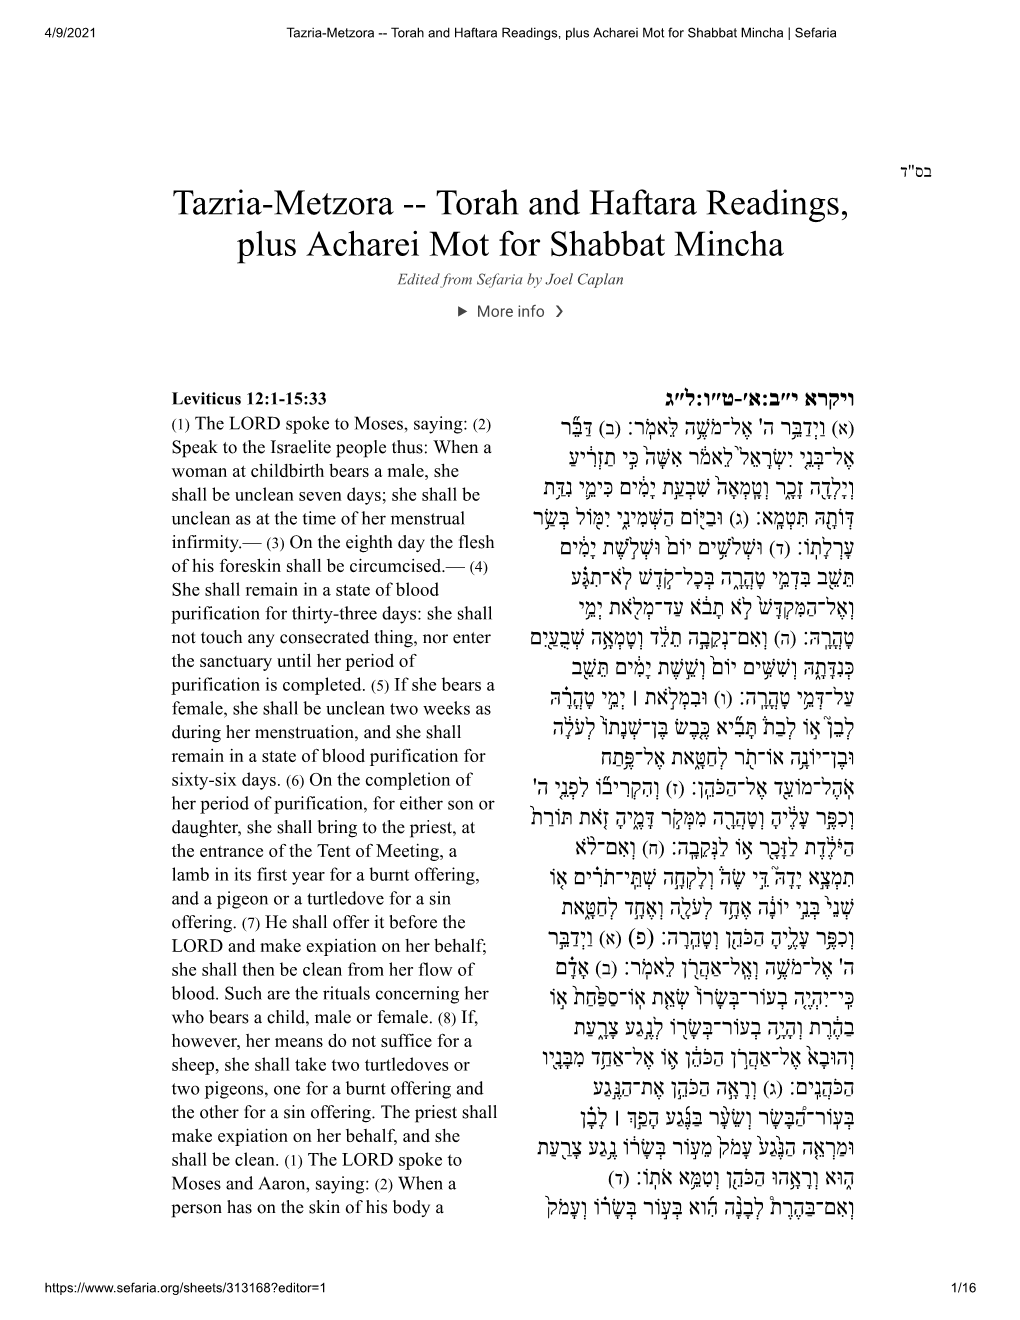 Tazria-Metzora -- Torah and Haftara Readings, Plus Acharei Mot for Shabbat Mincha | Sefaria